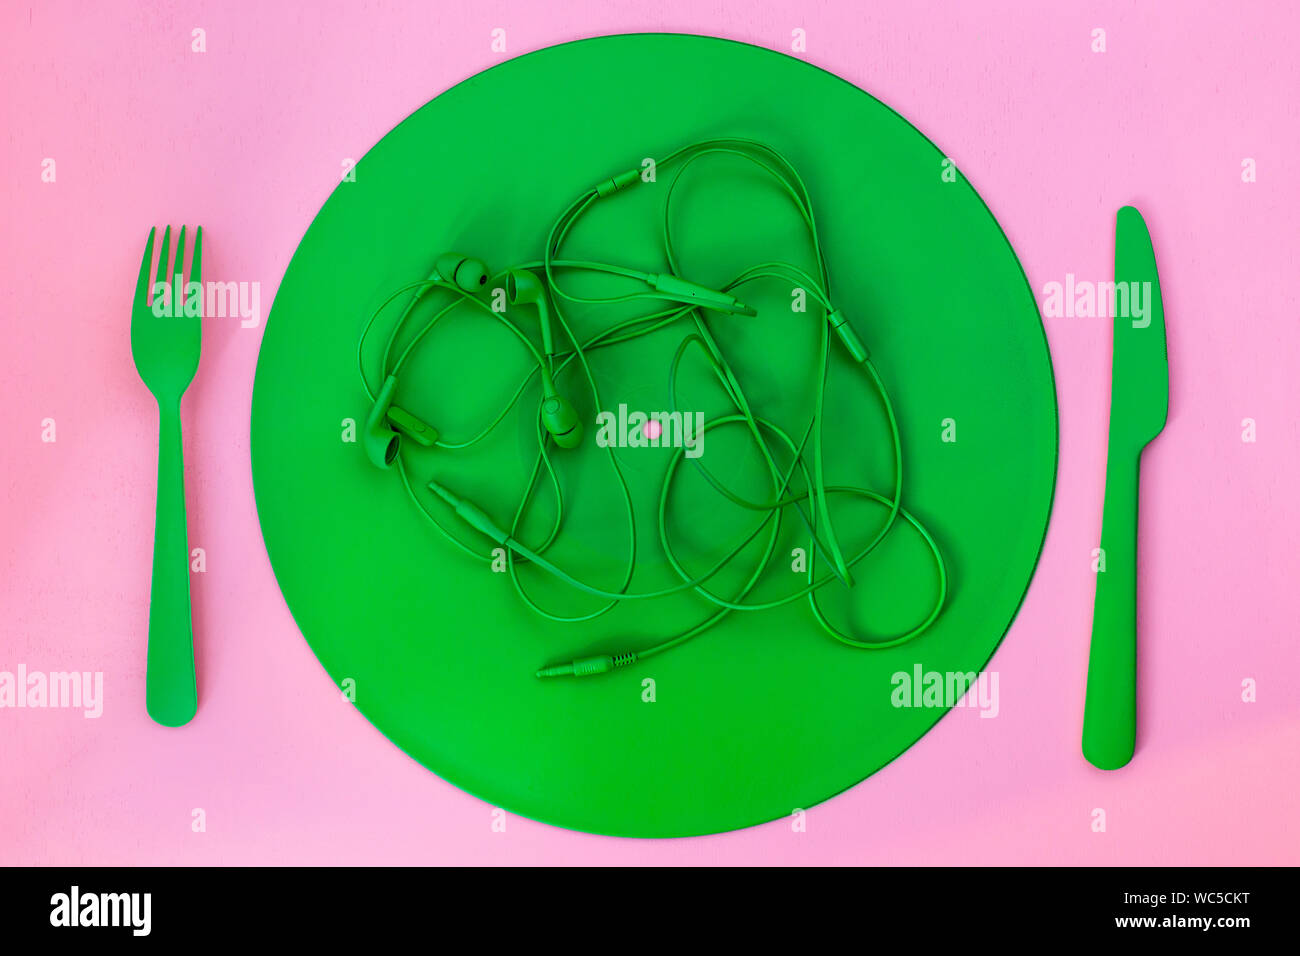 Kreatives Konzept aufnehmen Teller mit Messer, Gabel, Kopfhörer auf einem rosa Hintergrund Stockfoto